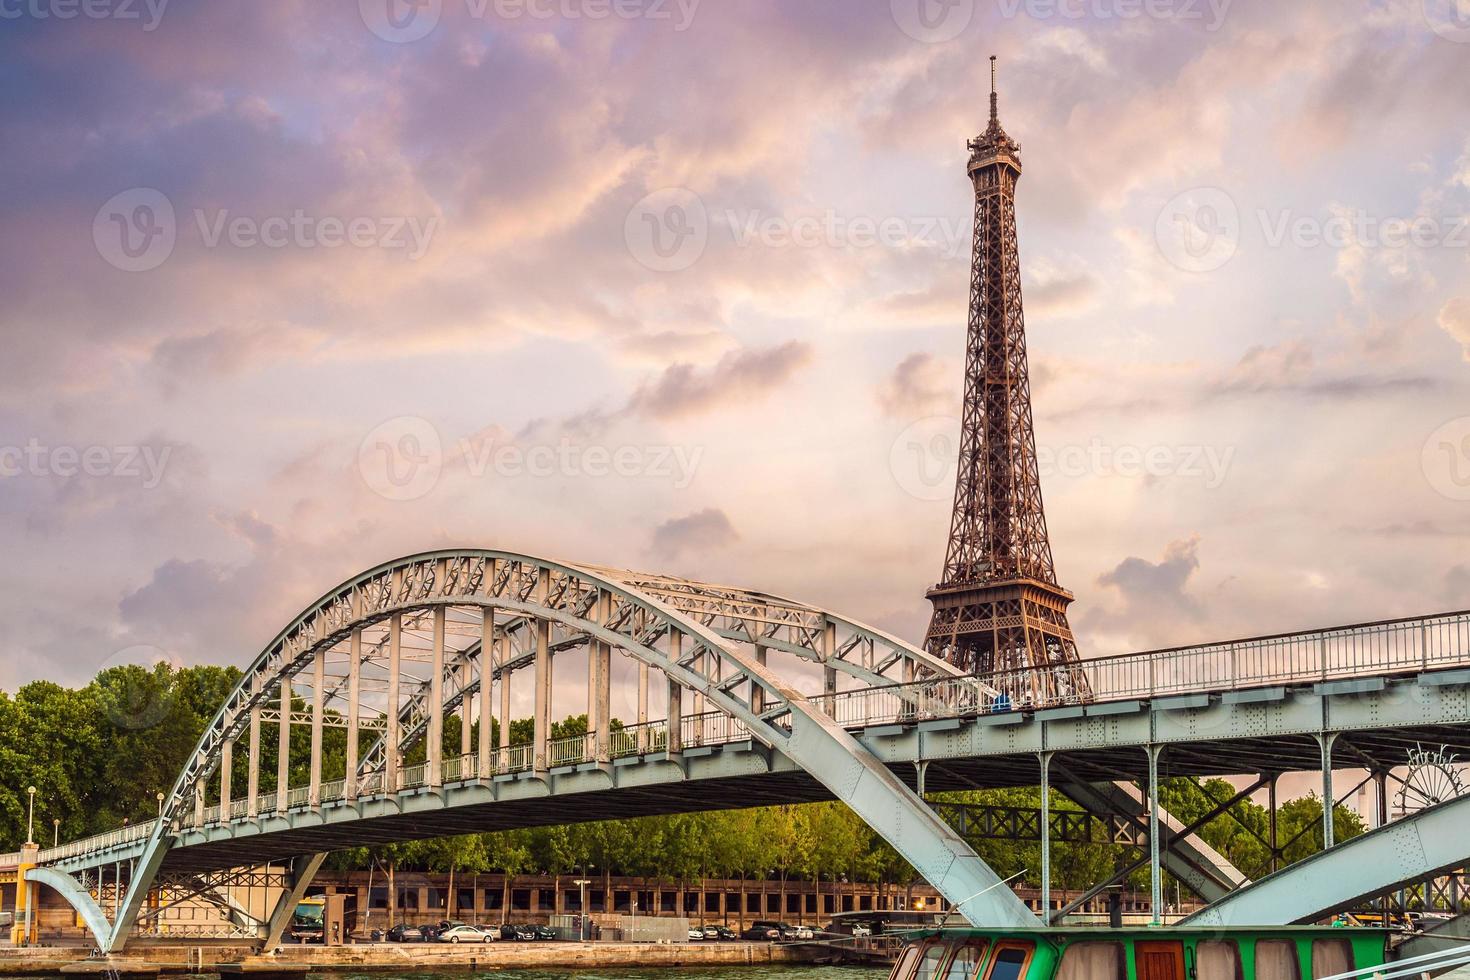 La torre Eiffel y el puente Passerelle debilly en París Francia foto